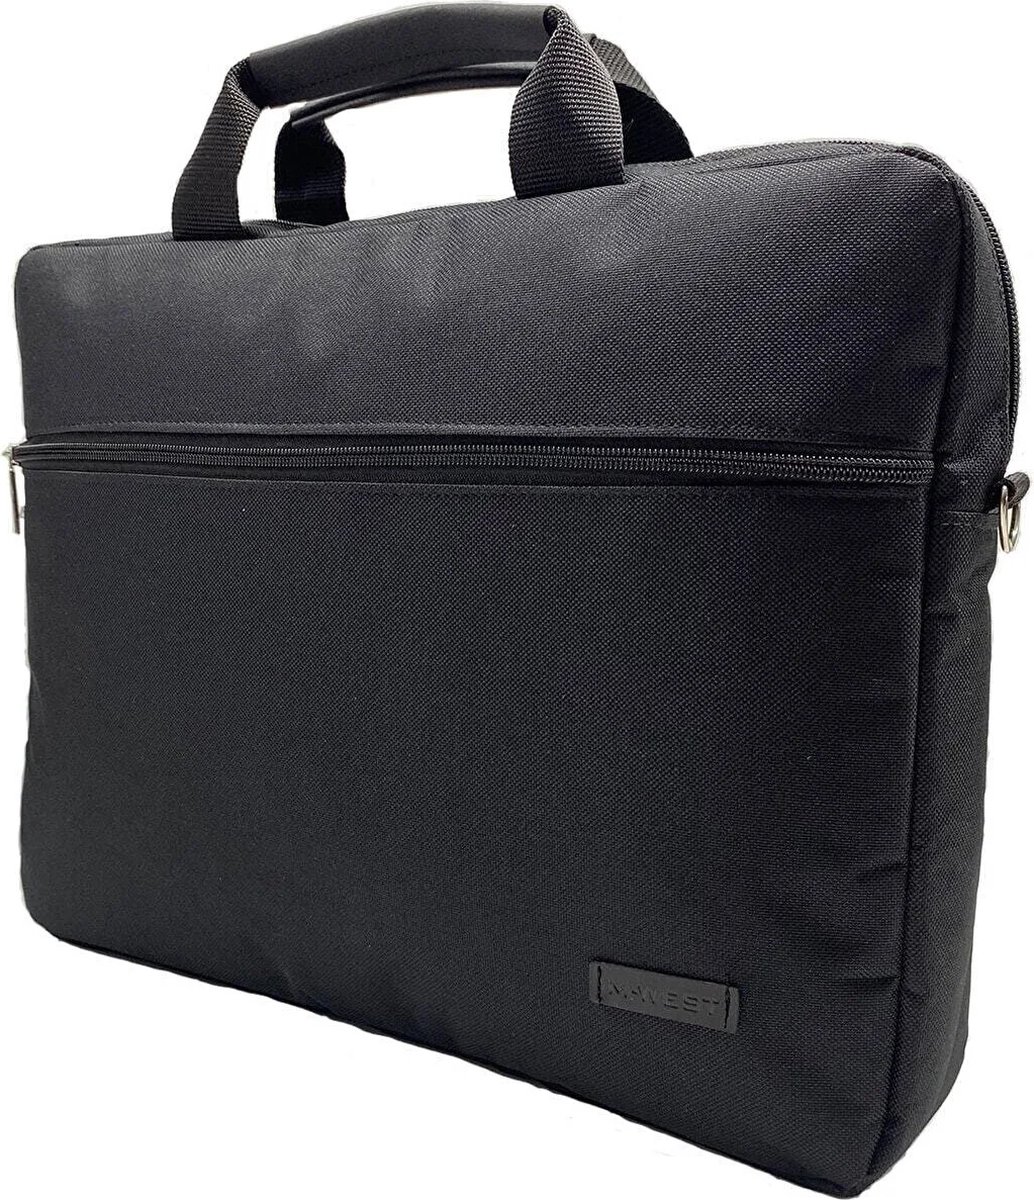 Laptopbag by Worldstar Products - Waterproof - 15.6 inch - Laptoptas - Extra bescherming- Licht in gewicht- Zwart